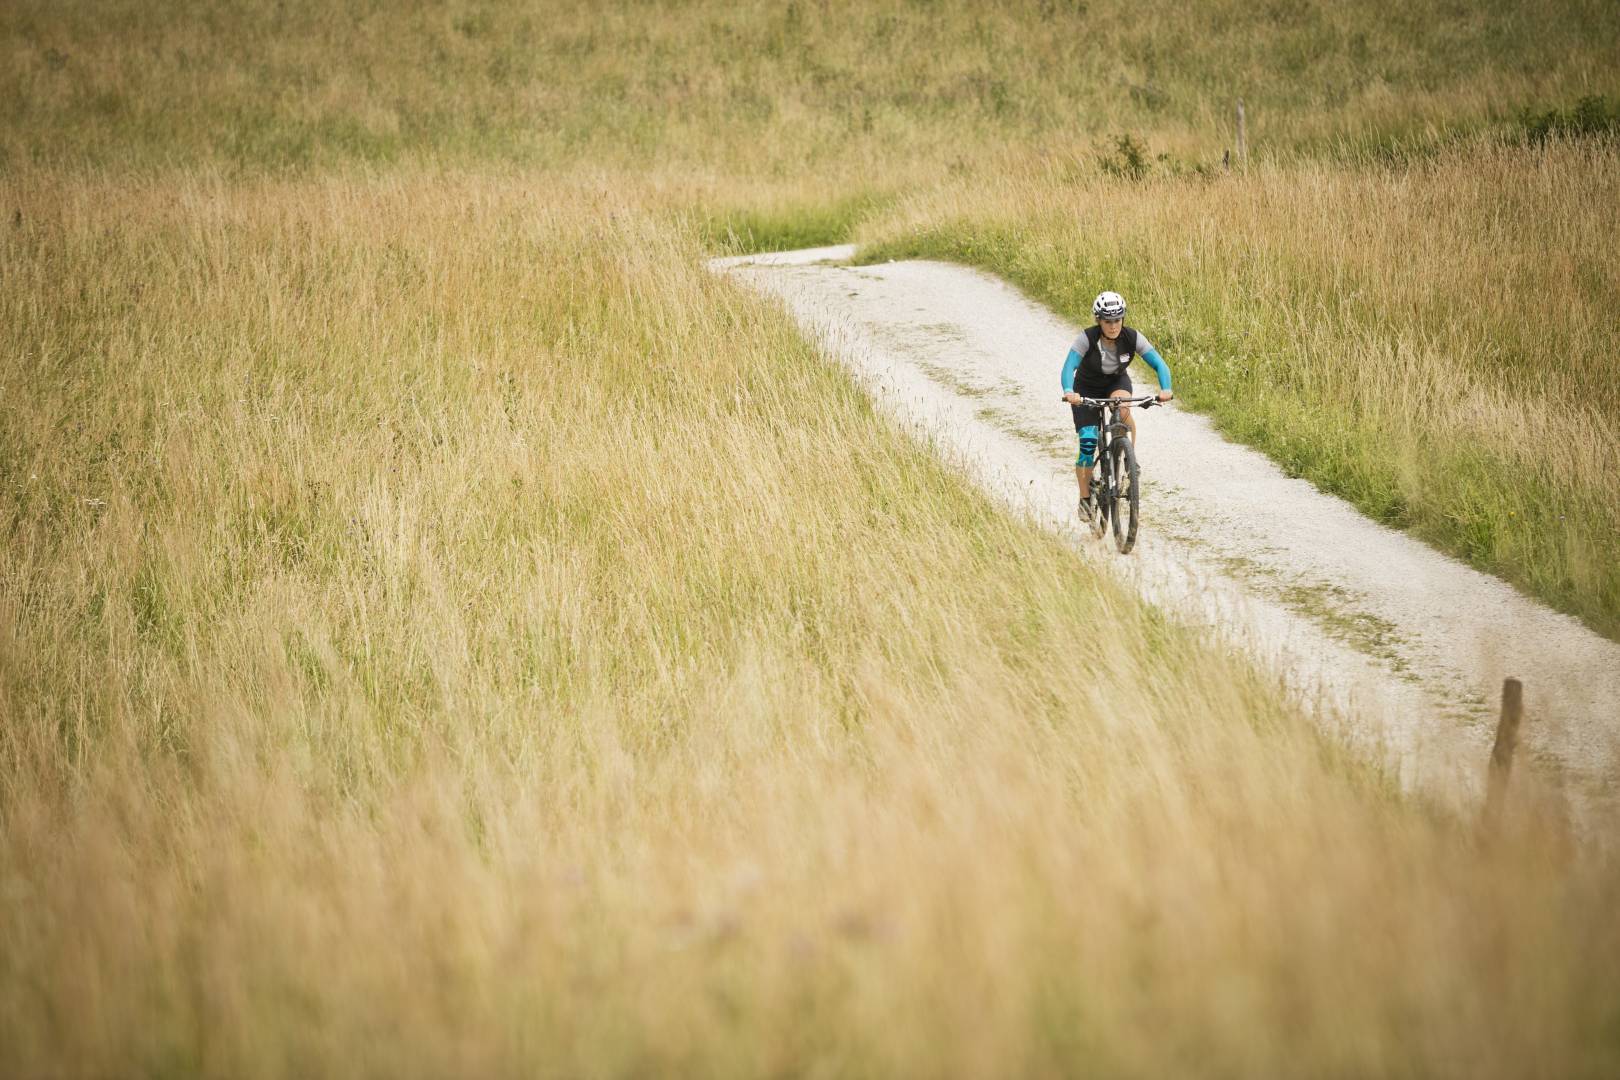 Vrouw met Armsleeves en Knie Band op de achtergrond van het beeld loopt op een mountainbike over een pad tussen hoog gras